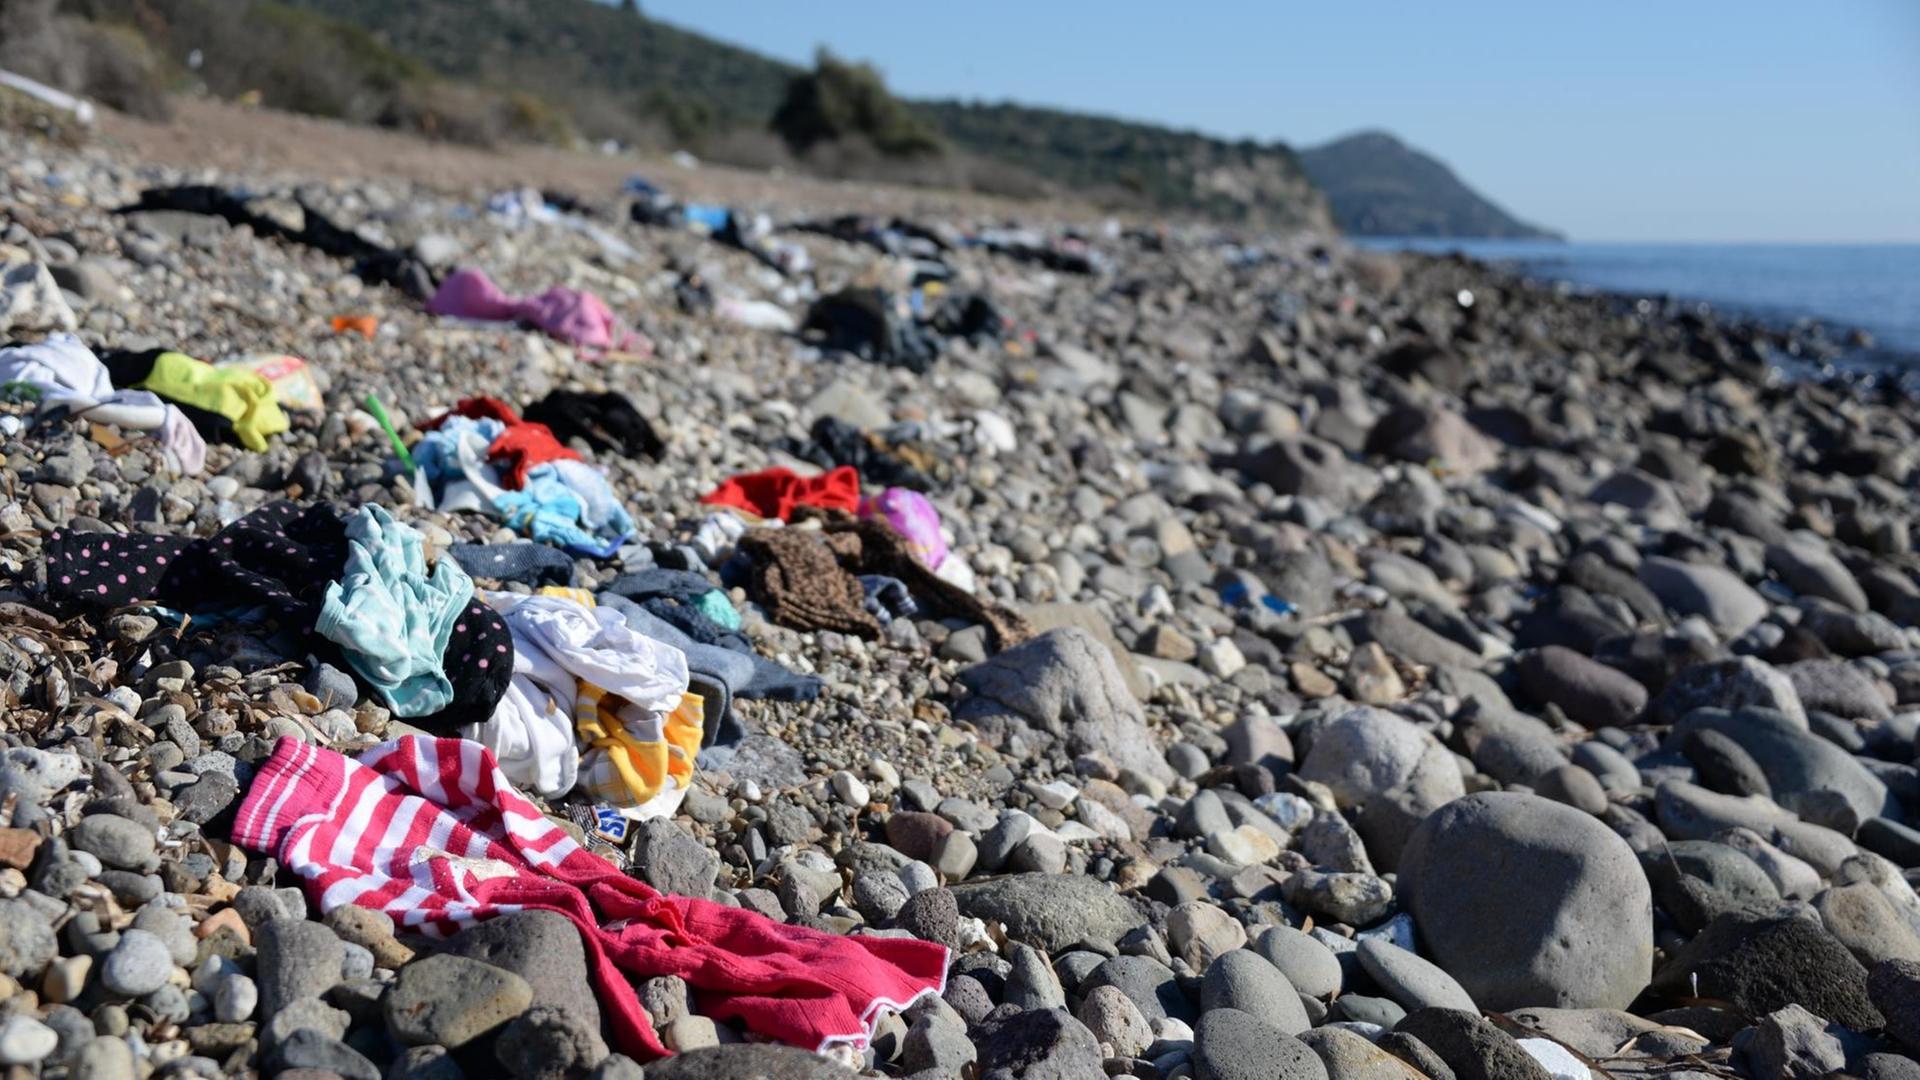 Kleidungsstücke liegen an einem Strand nahe Assos (Türkei). Sie wurden vermutlich von Flüchtlingen hinterlassen, die mit einem Boot von der Türkei zur griechischen Insel Lesbos gefahren sind.